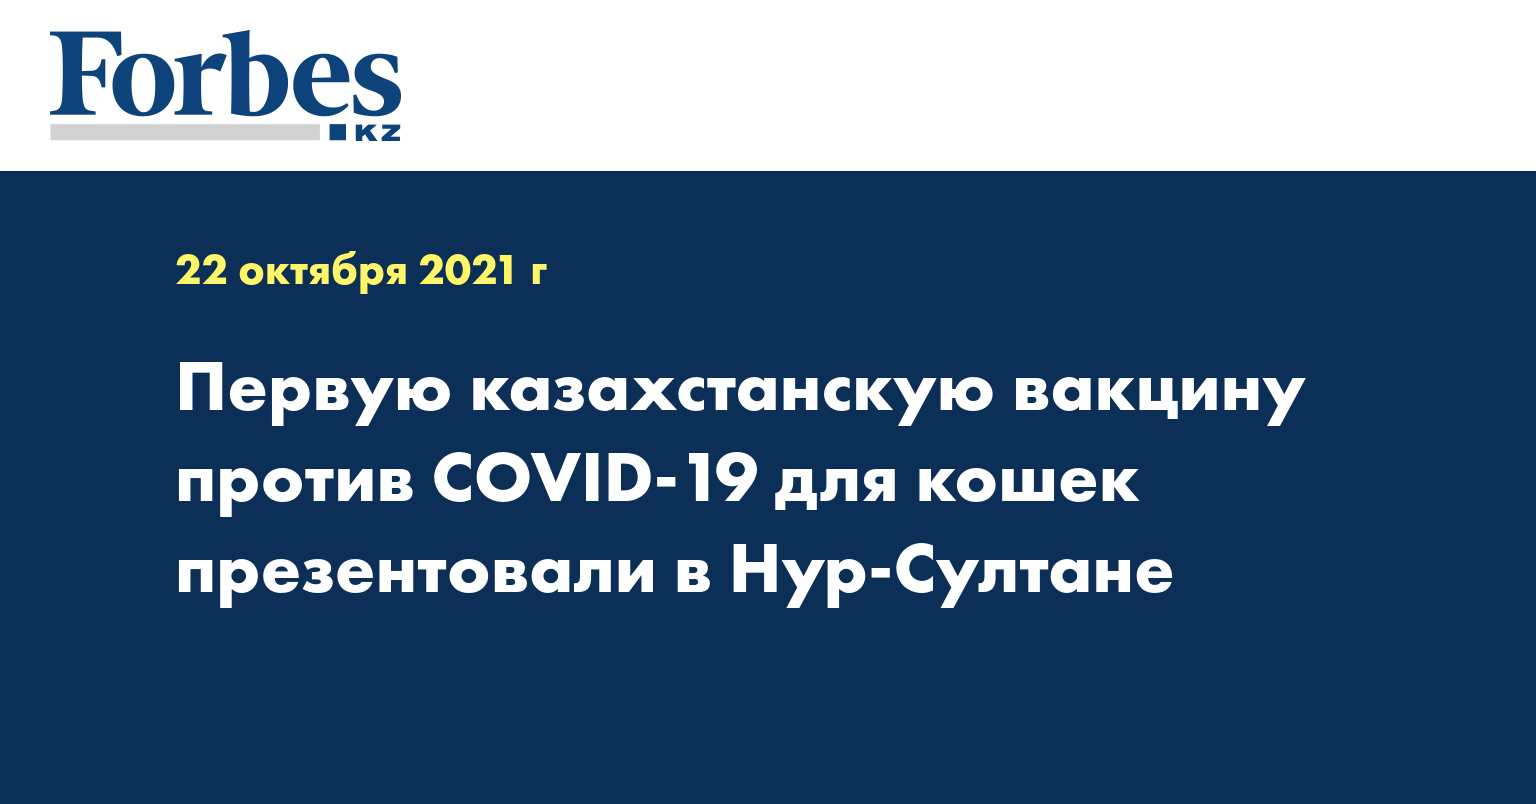 Первую казахстанскую вакцину против COVID-19 для кошек презентовали в Нур-Султане 